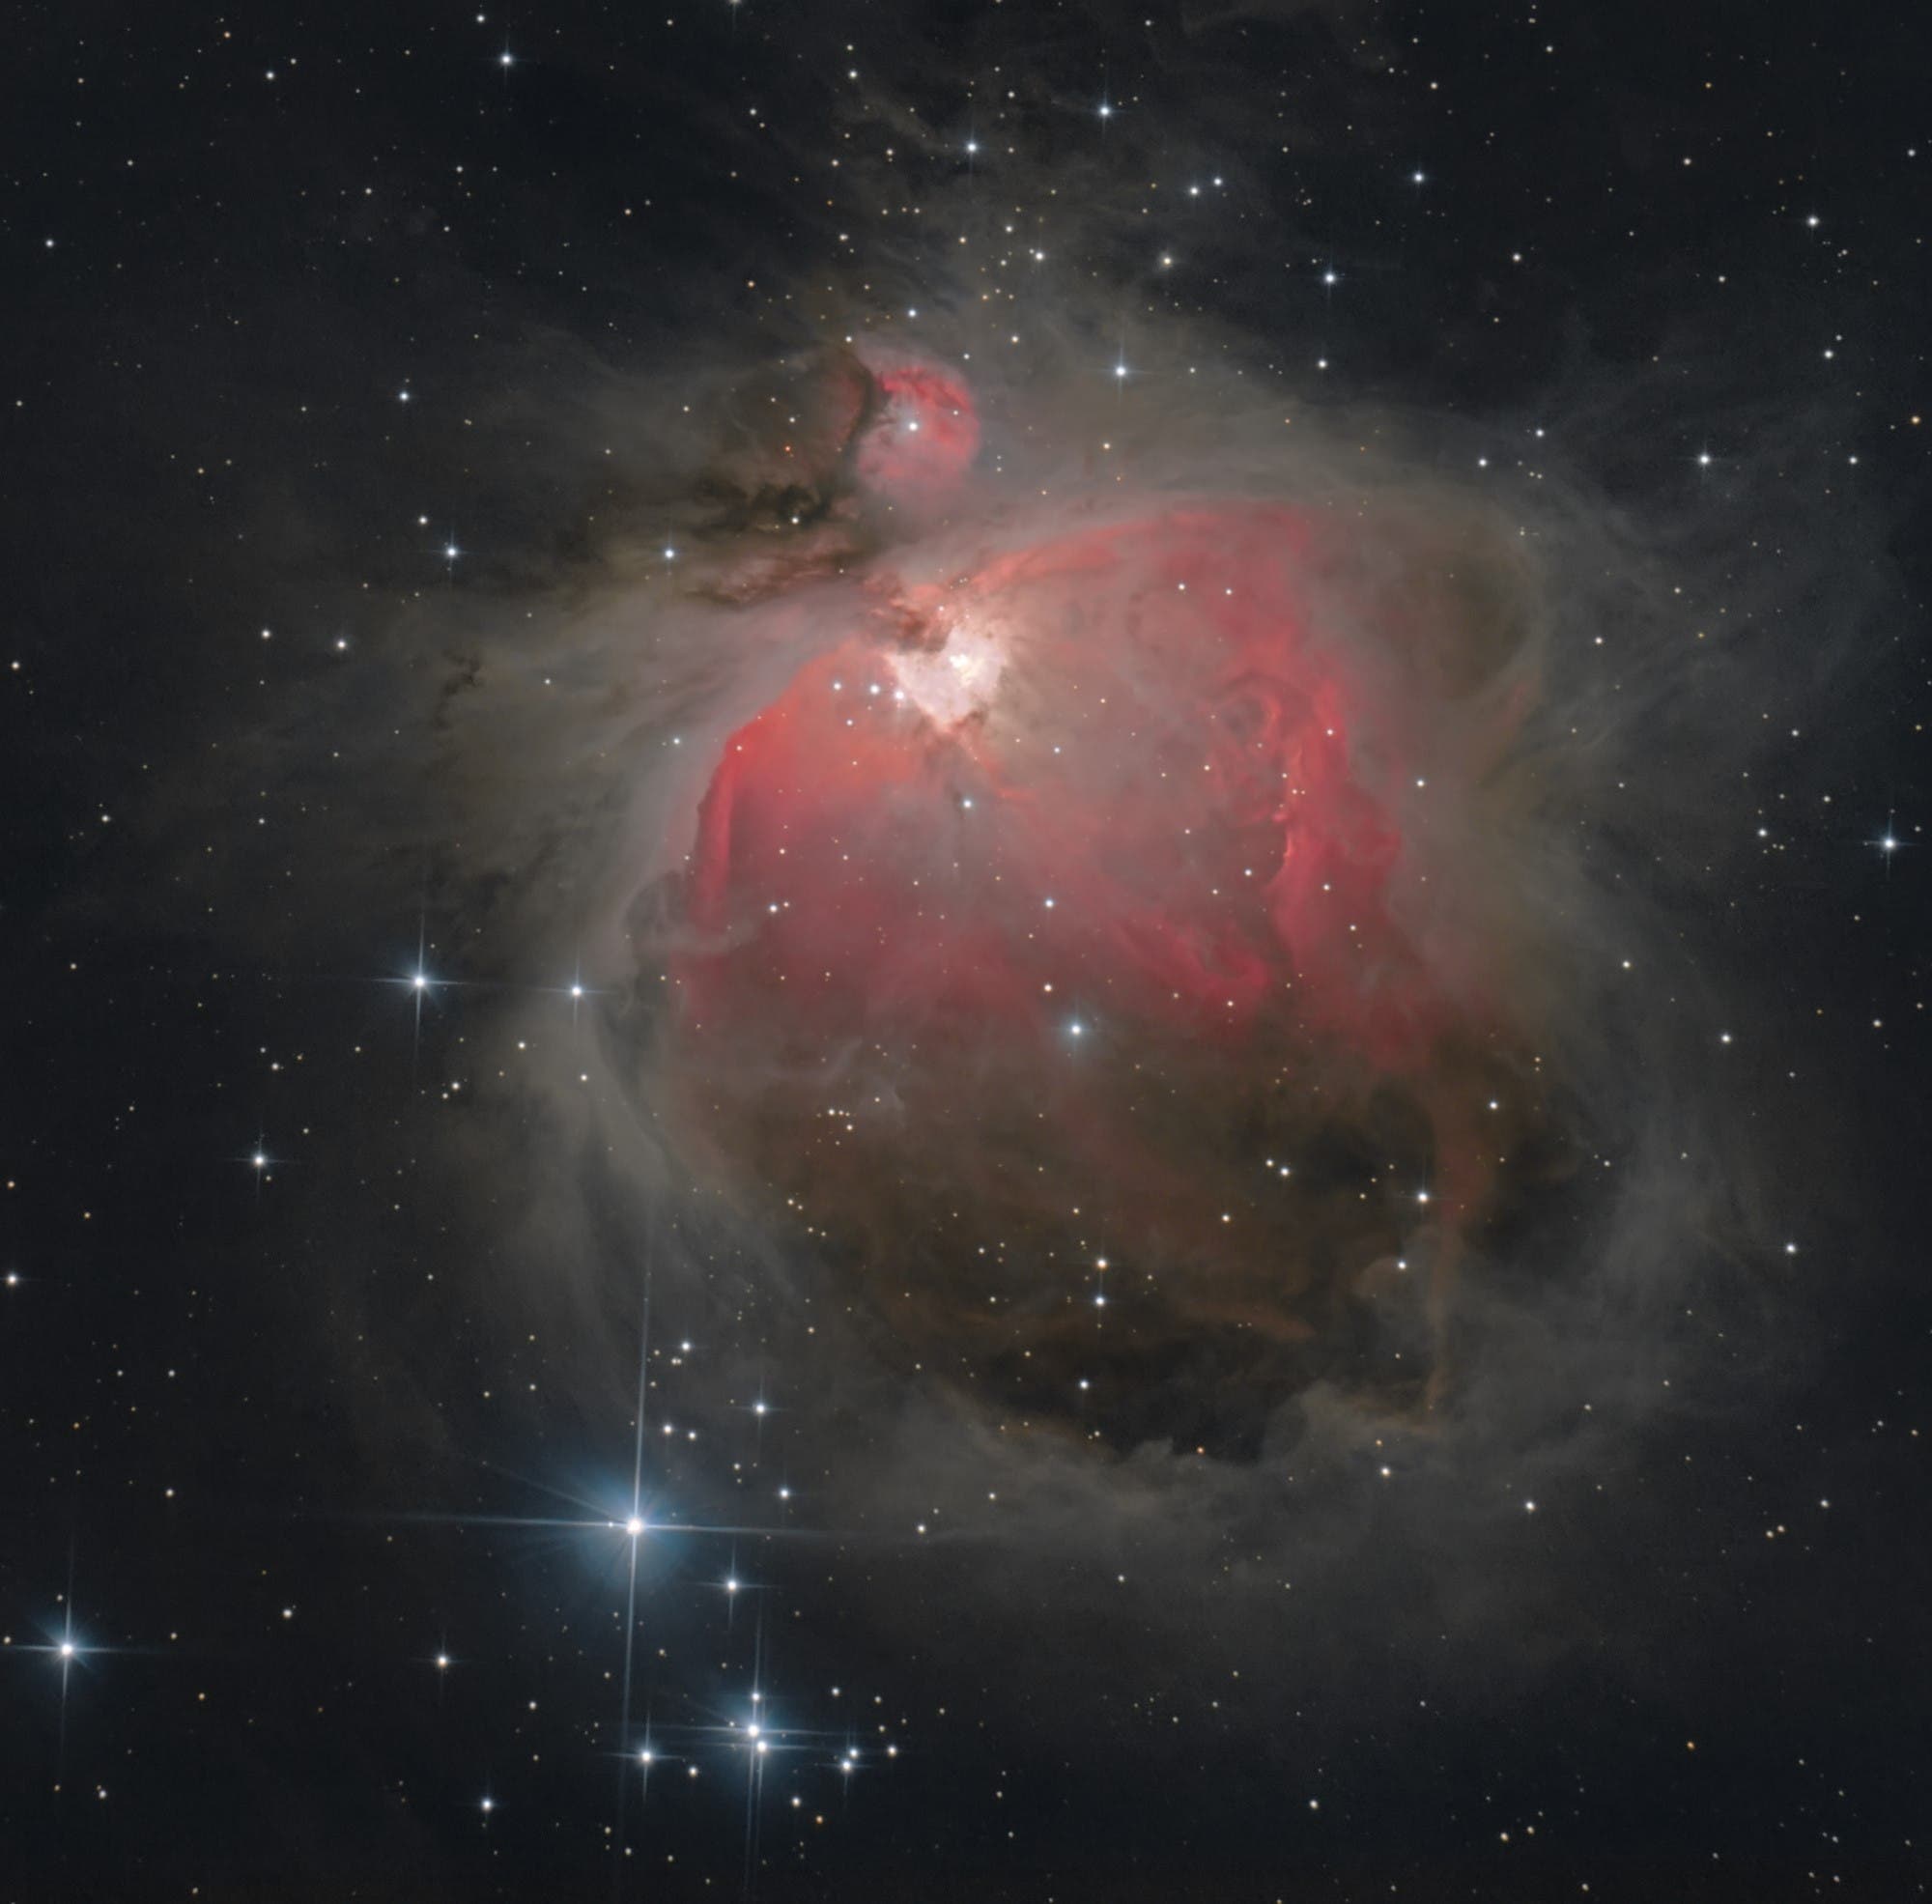 Messier 42